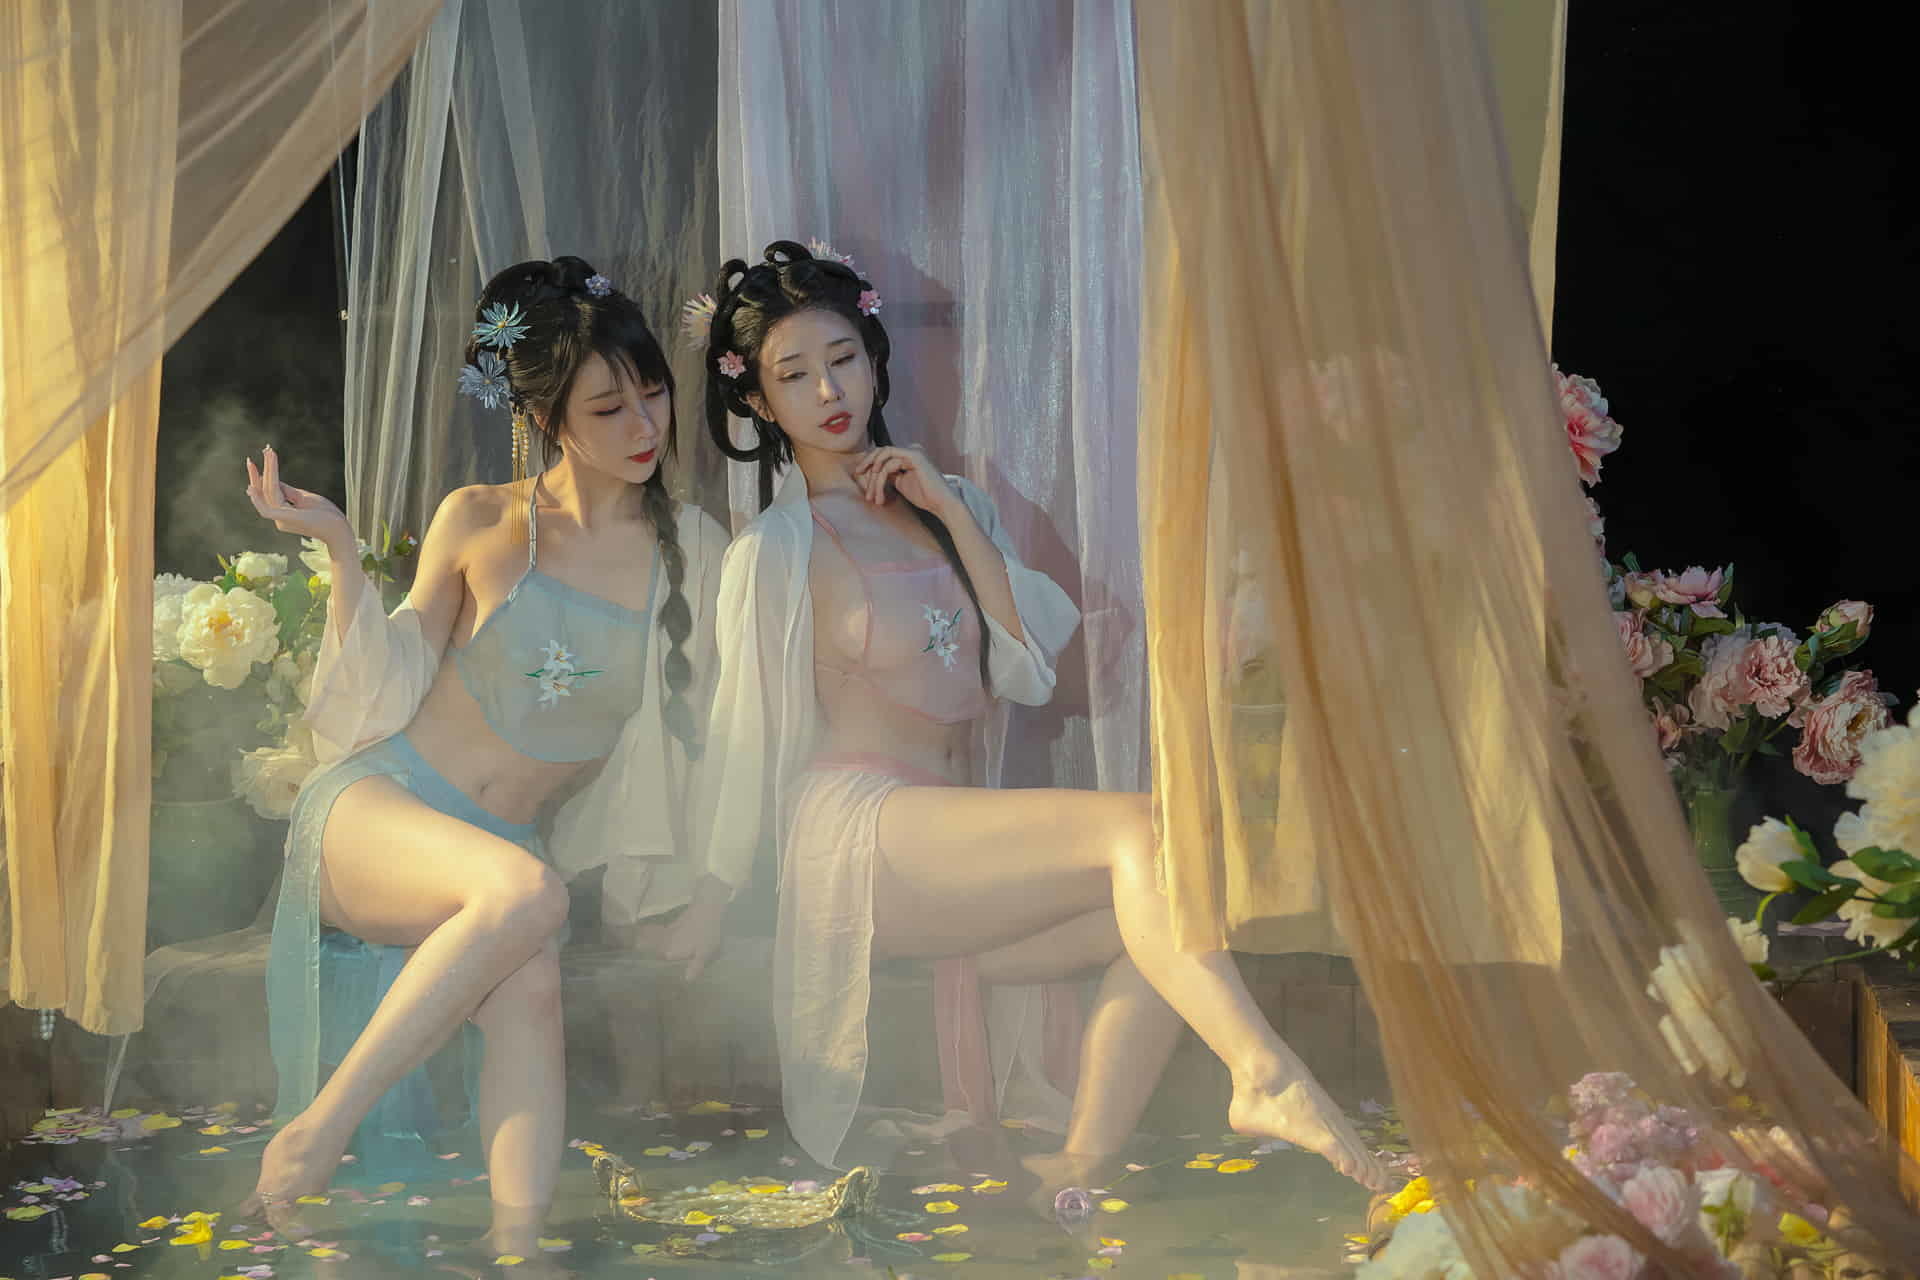 Лучшая двойная модель интернет-знаменитости, красавица Юнь Сиси и Найтао играют в ванне в старинных костюмах.